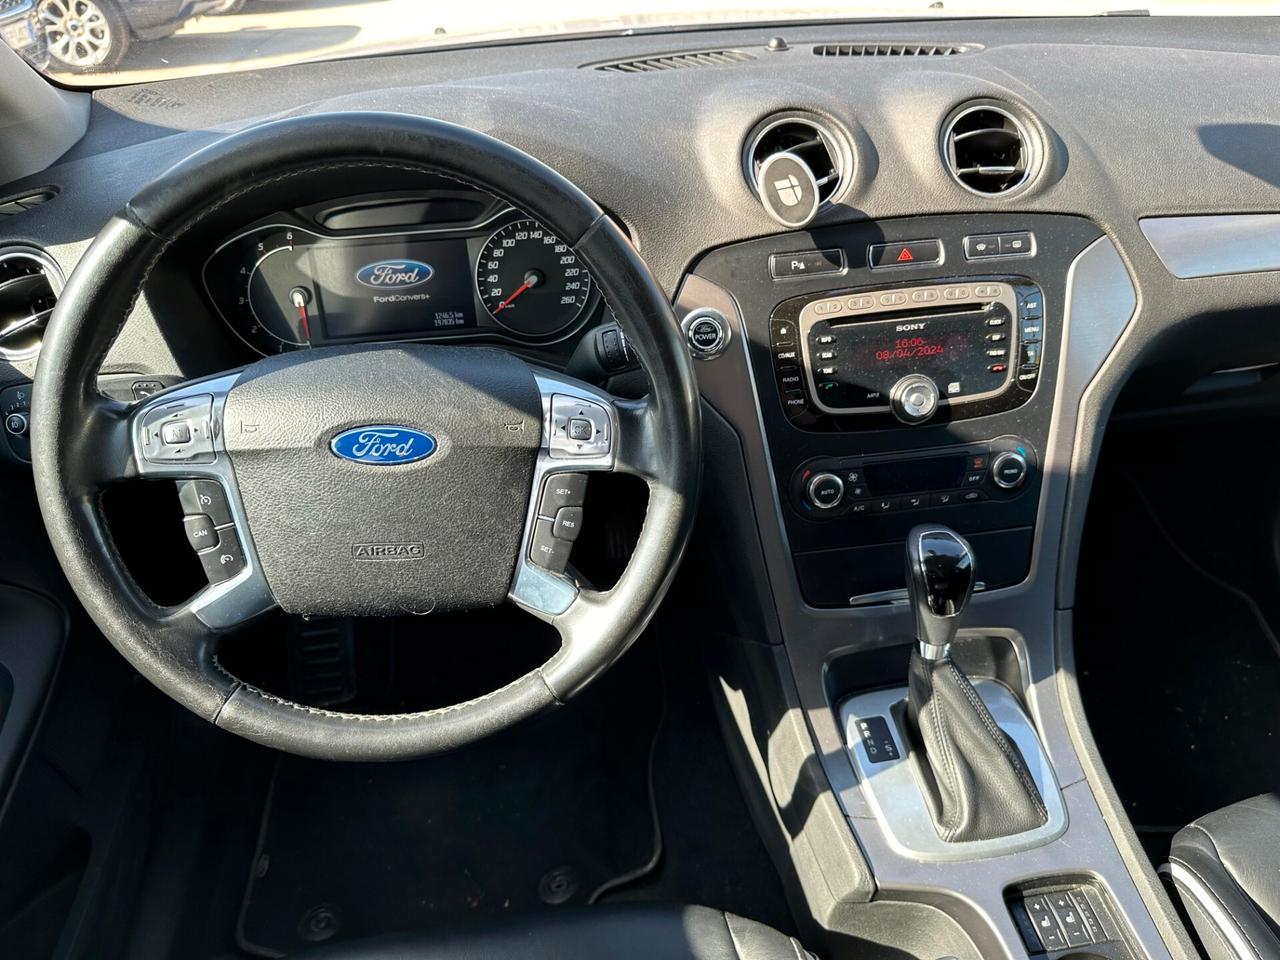 Ford Mondeo2.0 TDCi 163 CV